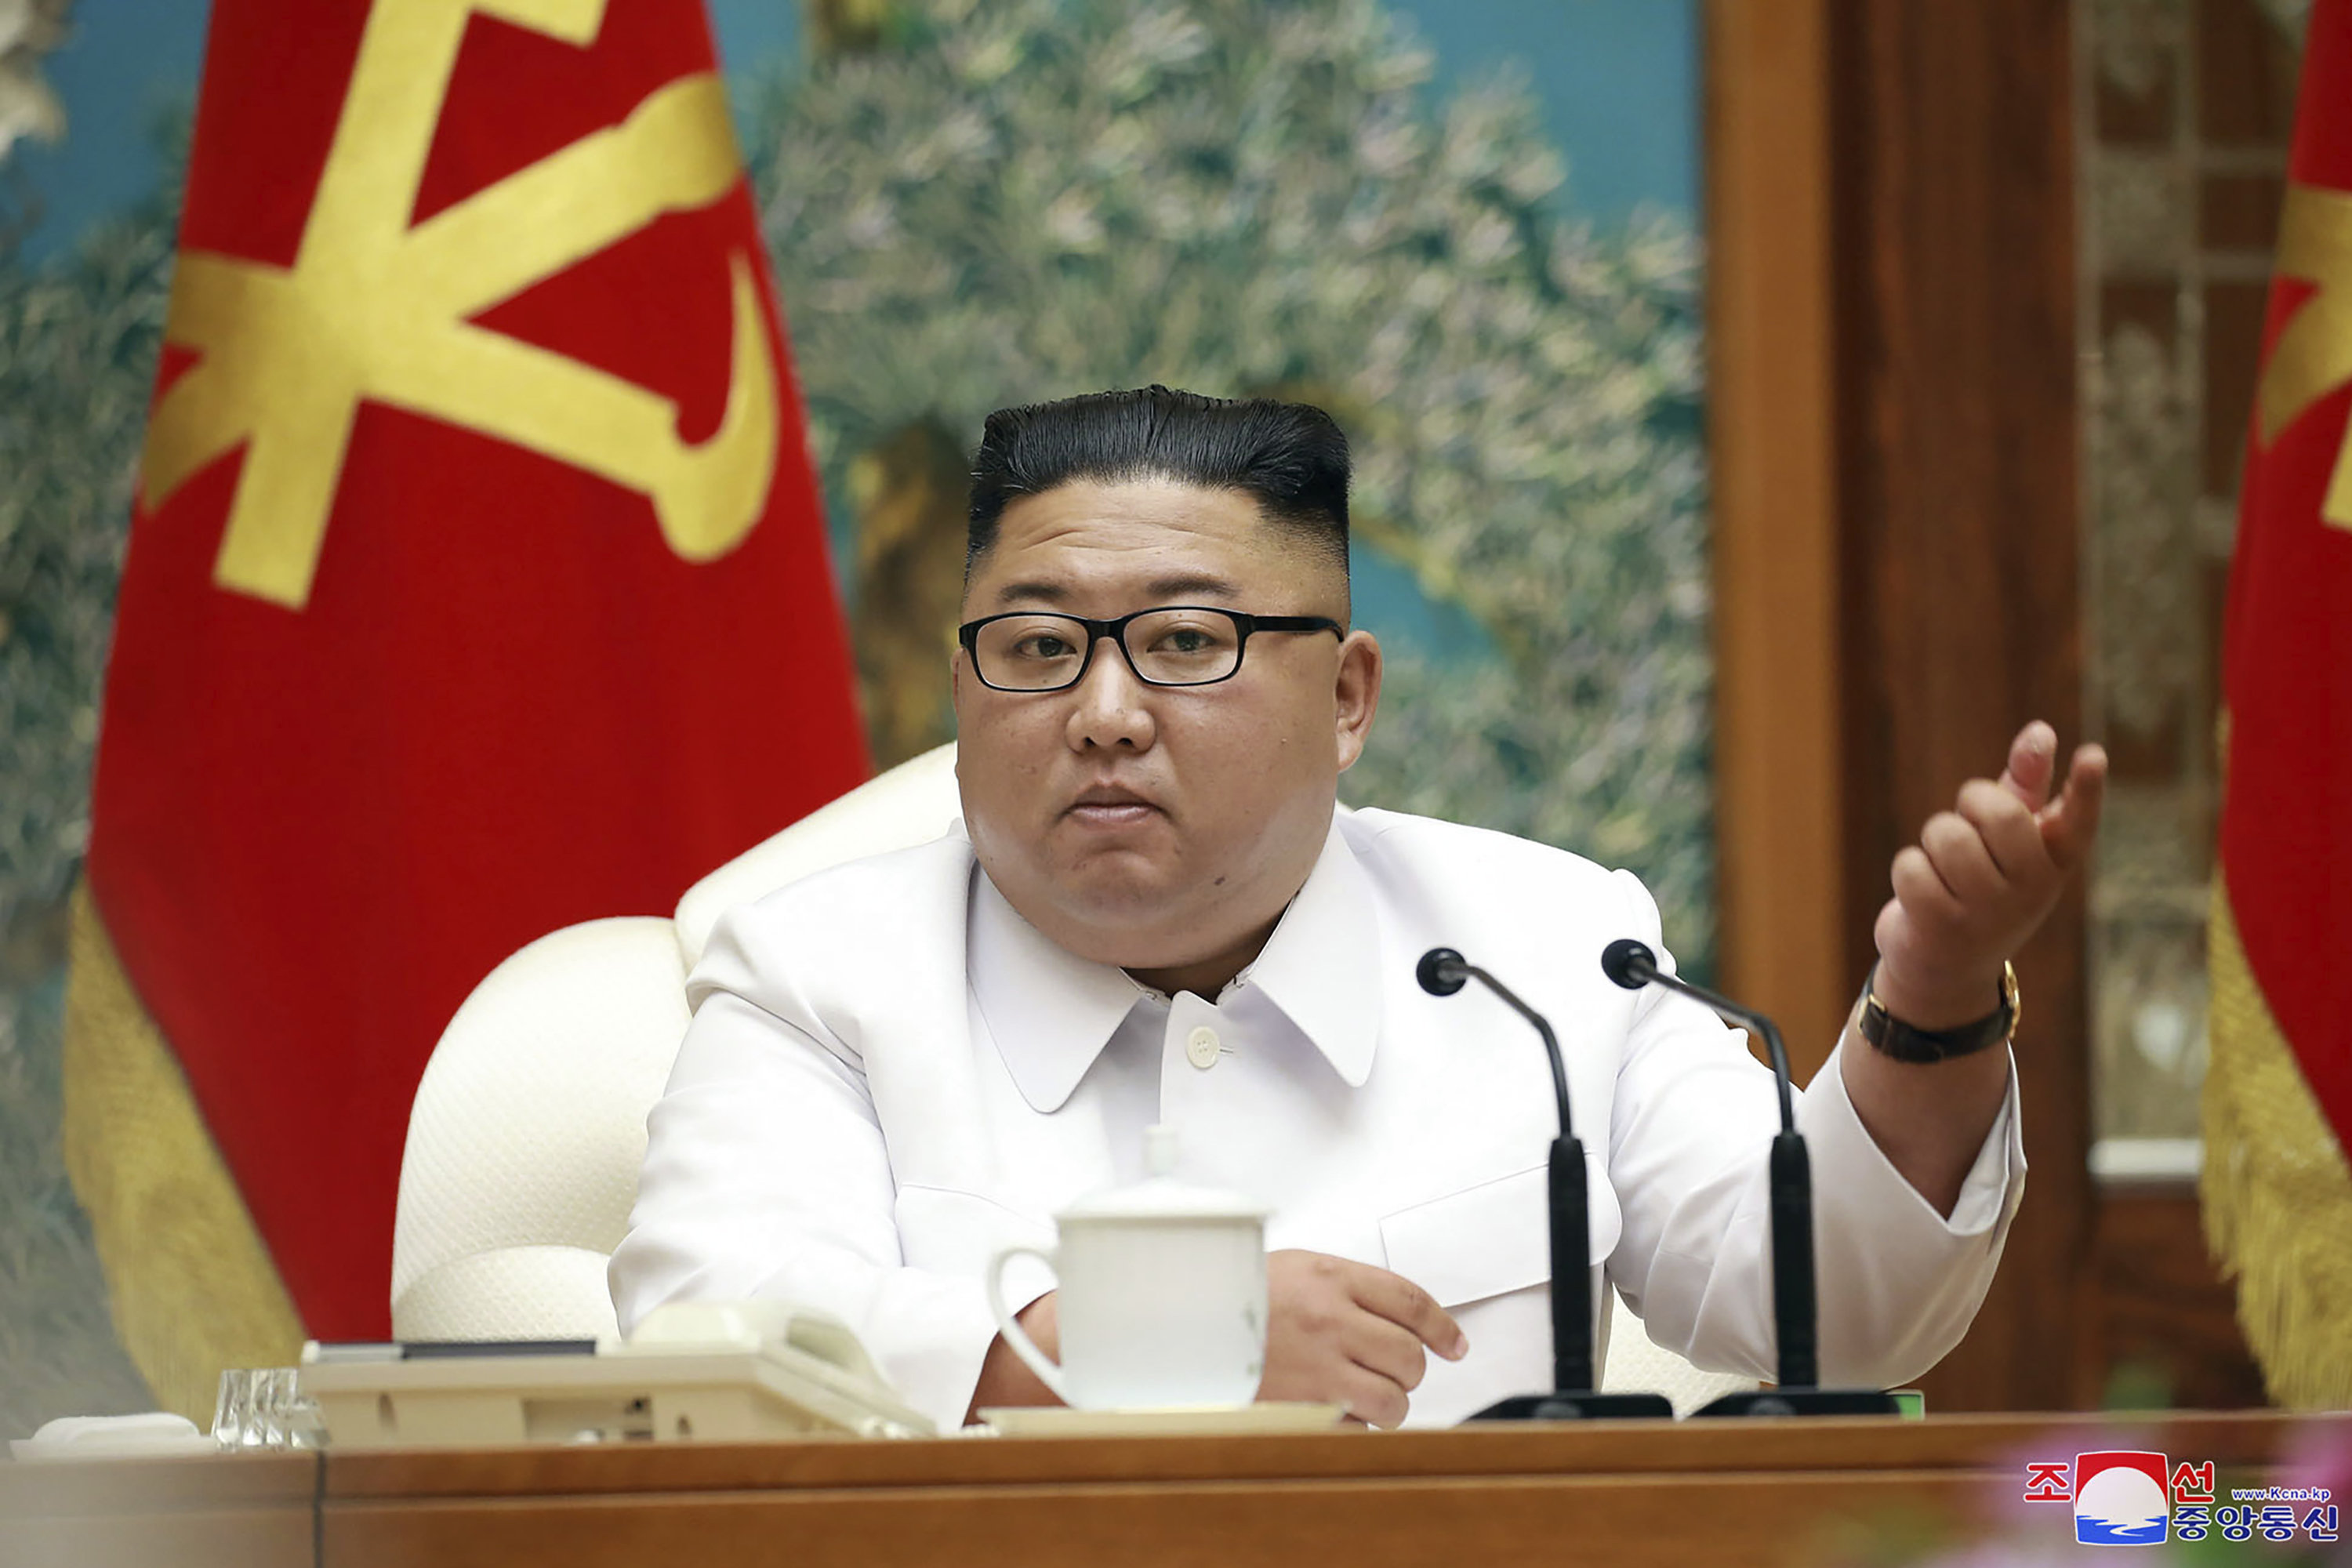 Северна Корея ще ускори развитието на ядрения си арсенал Това заяви